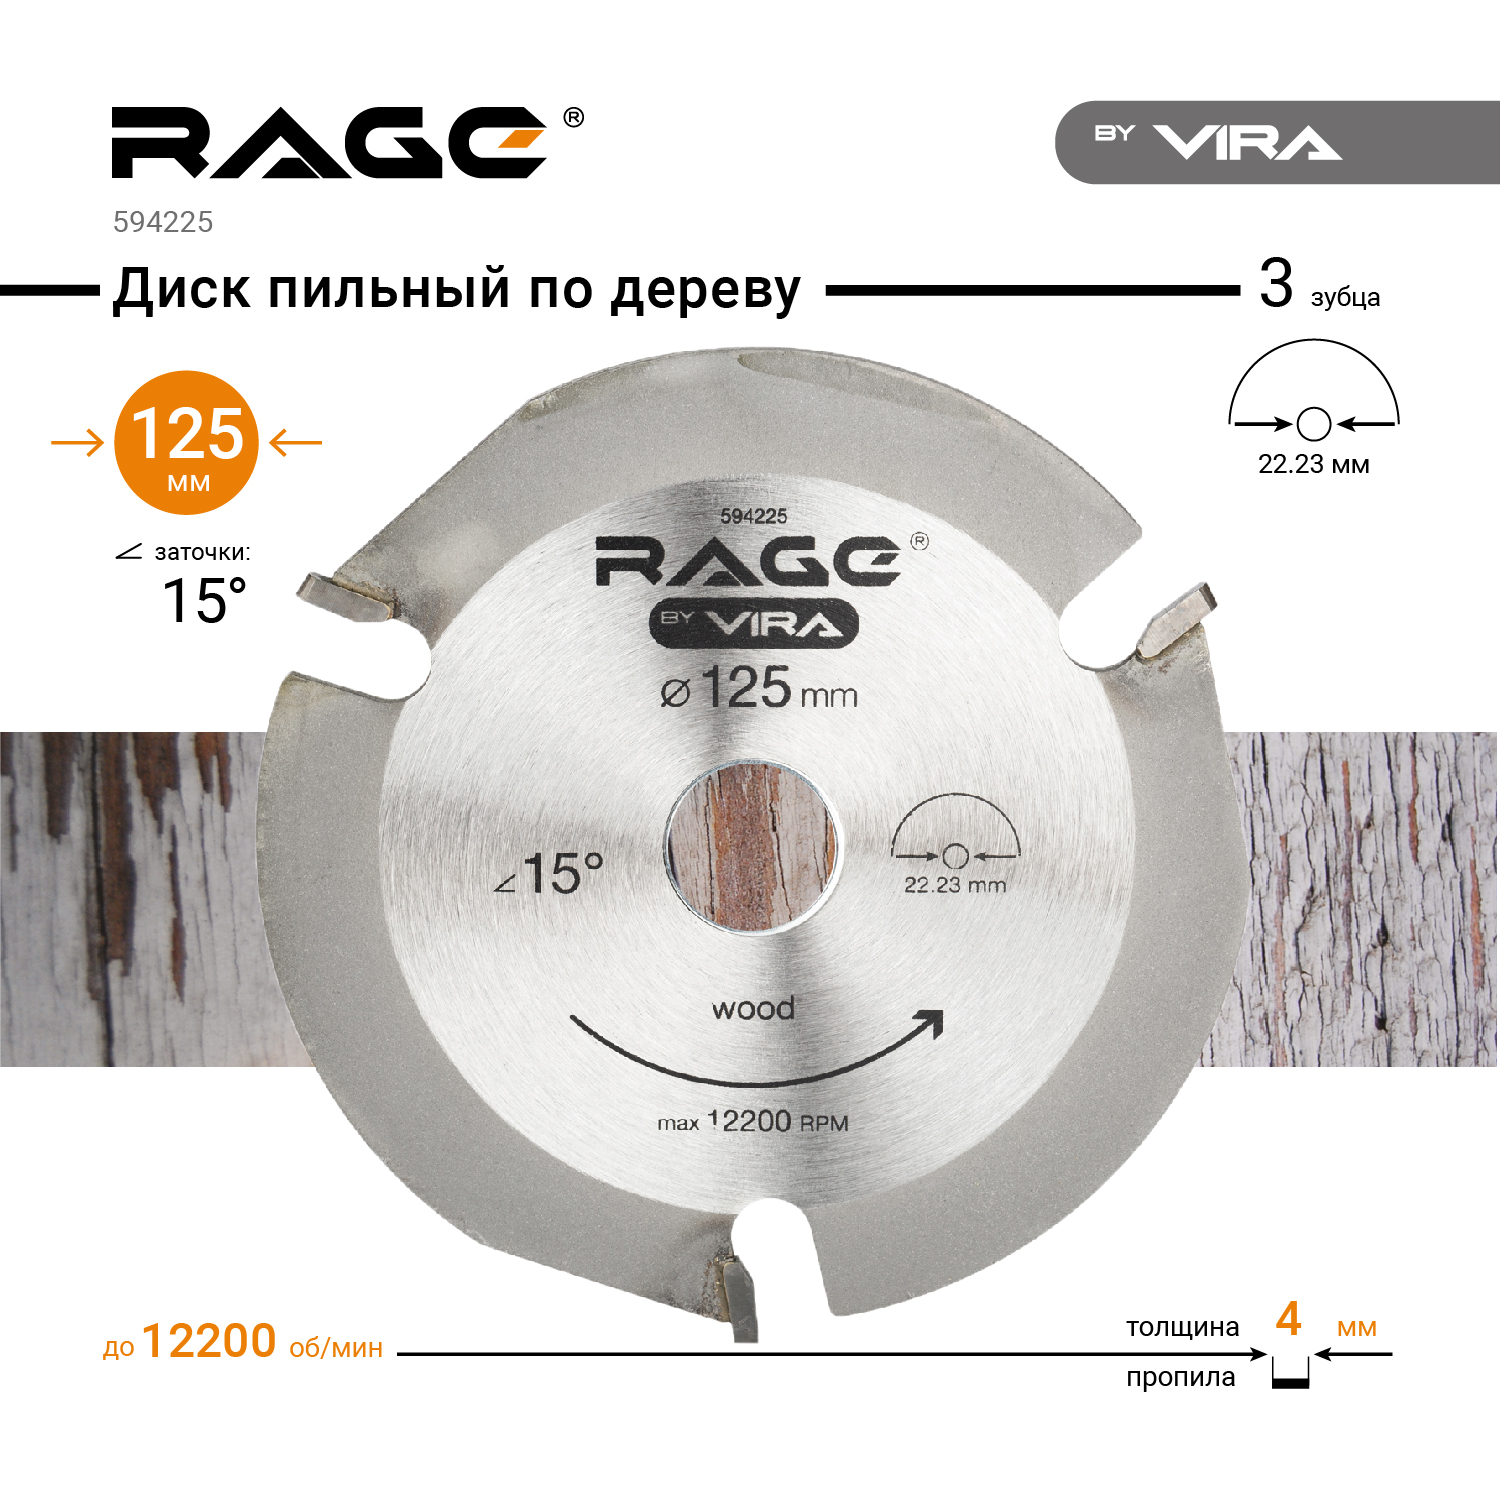 Vira Rage 165 мм диск. Rage Vira 59425 диск для дерева 125 мм. Vira диск алмазный. 594225m620. Диск для ушм по дереву 125 купить